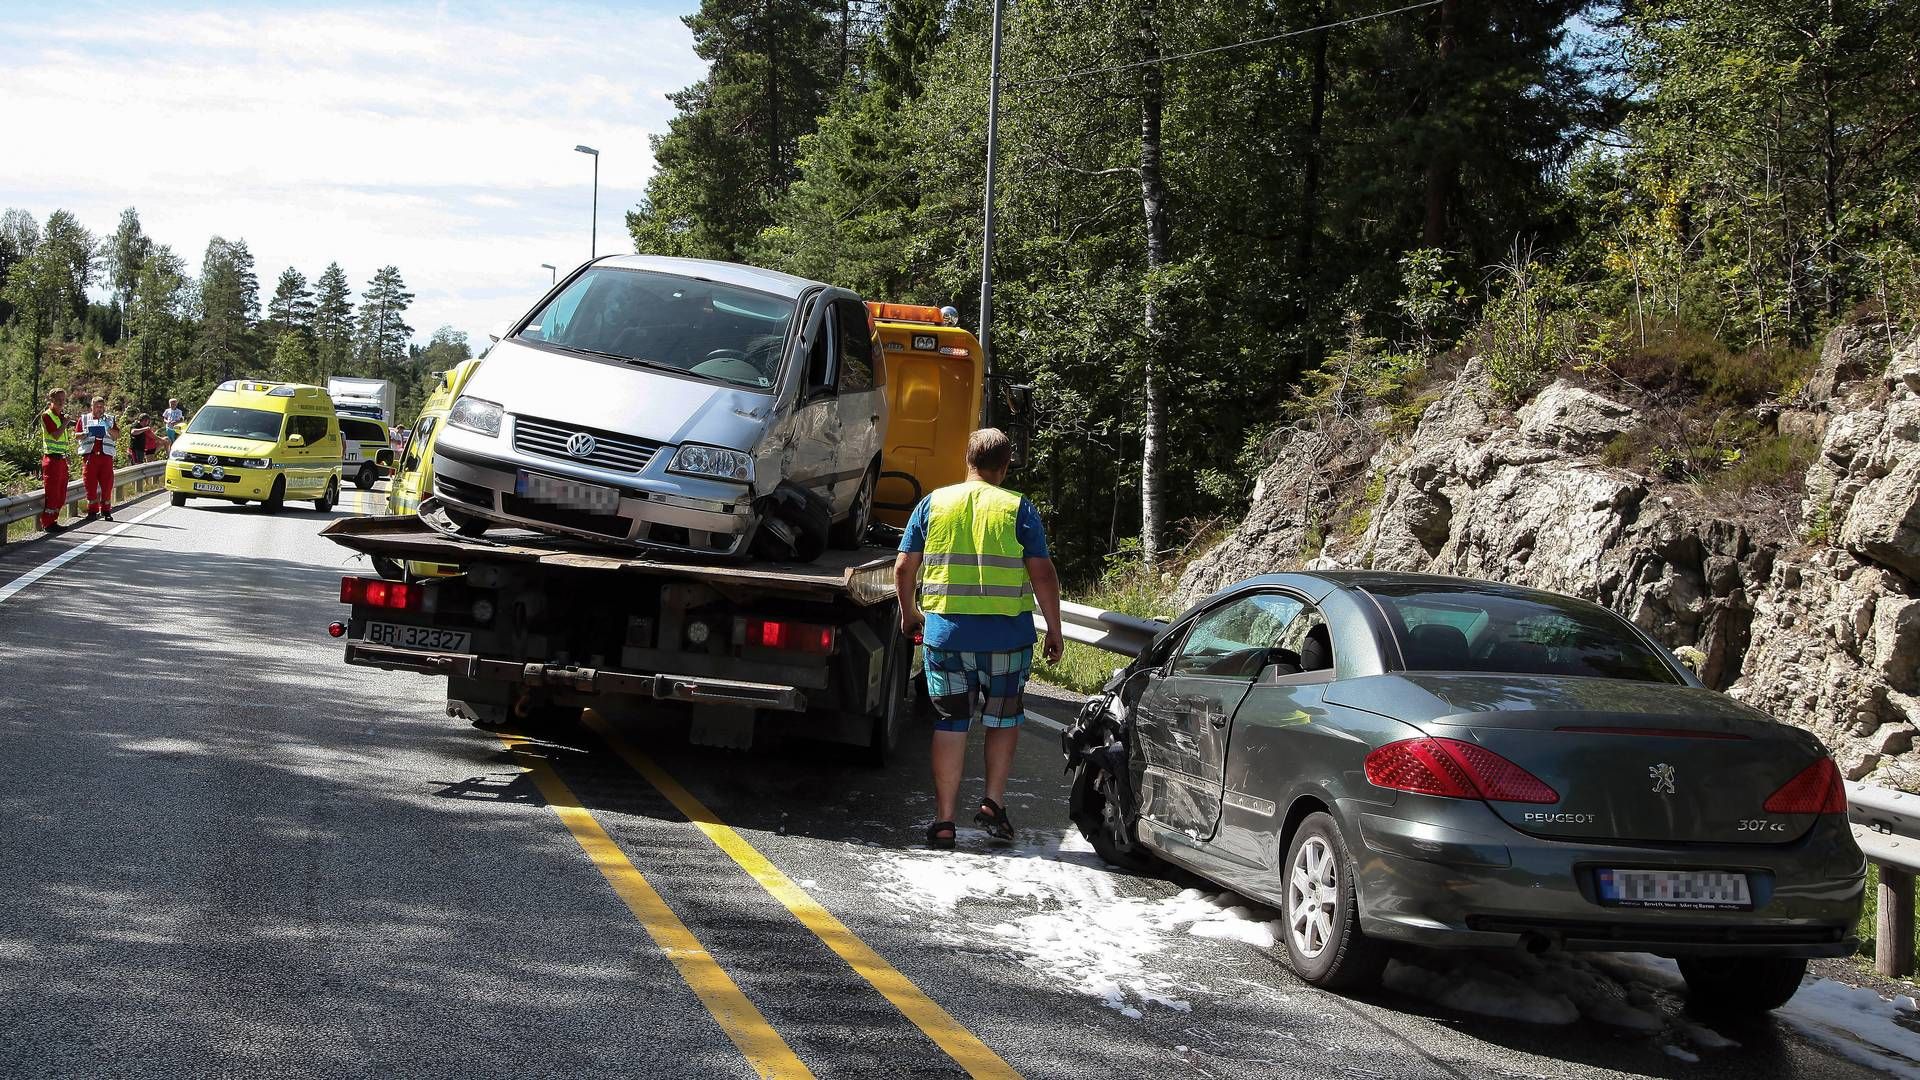 ØKTE ERSTATNINGER: Illustrasjonsbilde. Norske biler er oftere involvert i ulykker og andre forsikringshendelser enn før. I år kan samlede erstatningsutbetalinger overstige 20 milliarder kroner. | Foto: Thorvald Knudsen / NTB